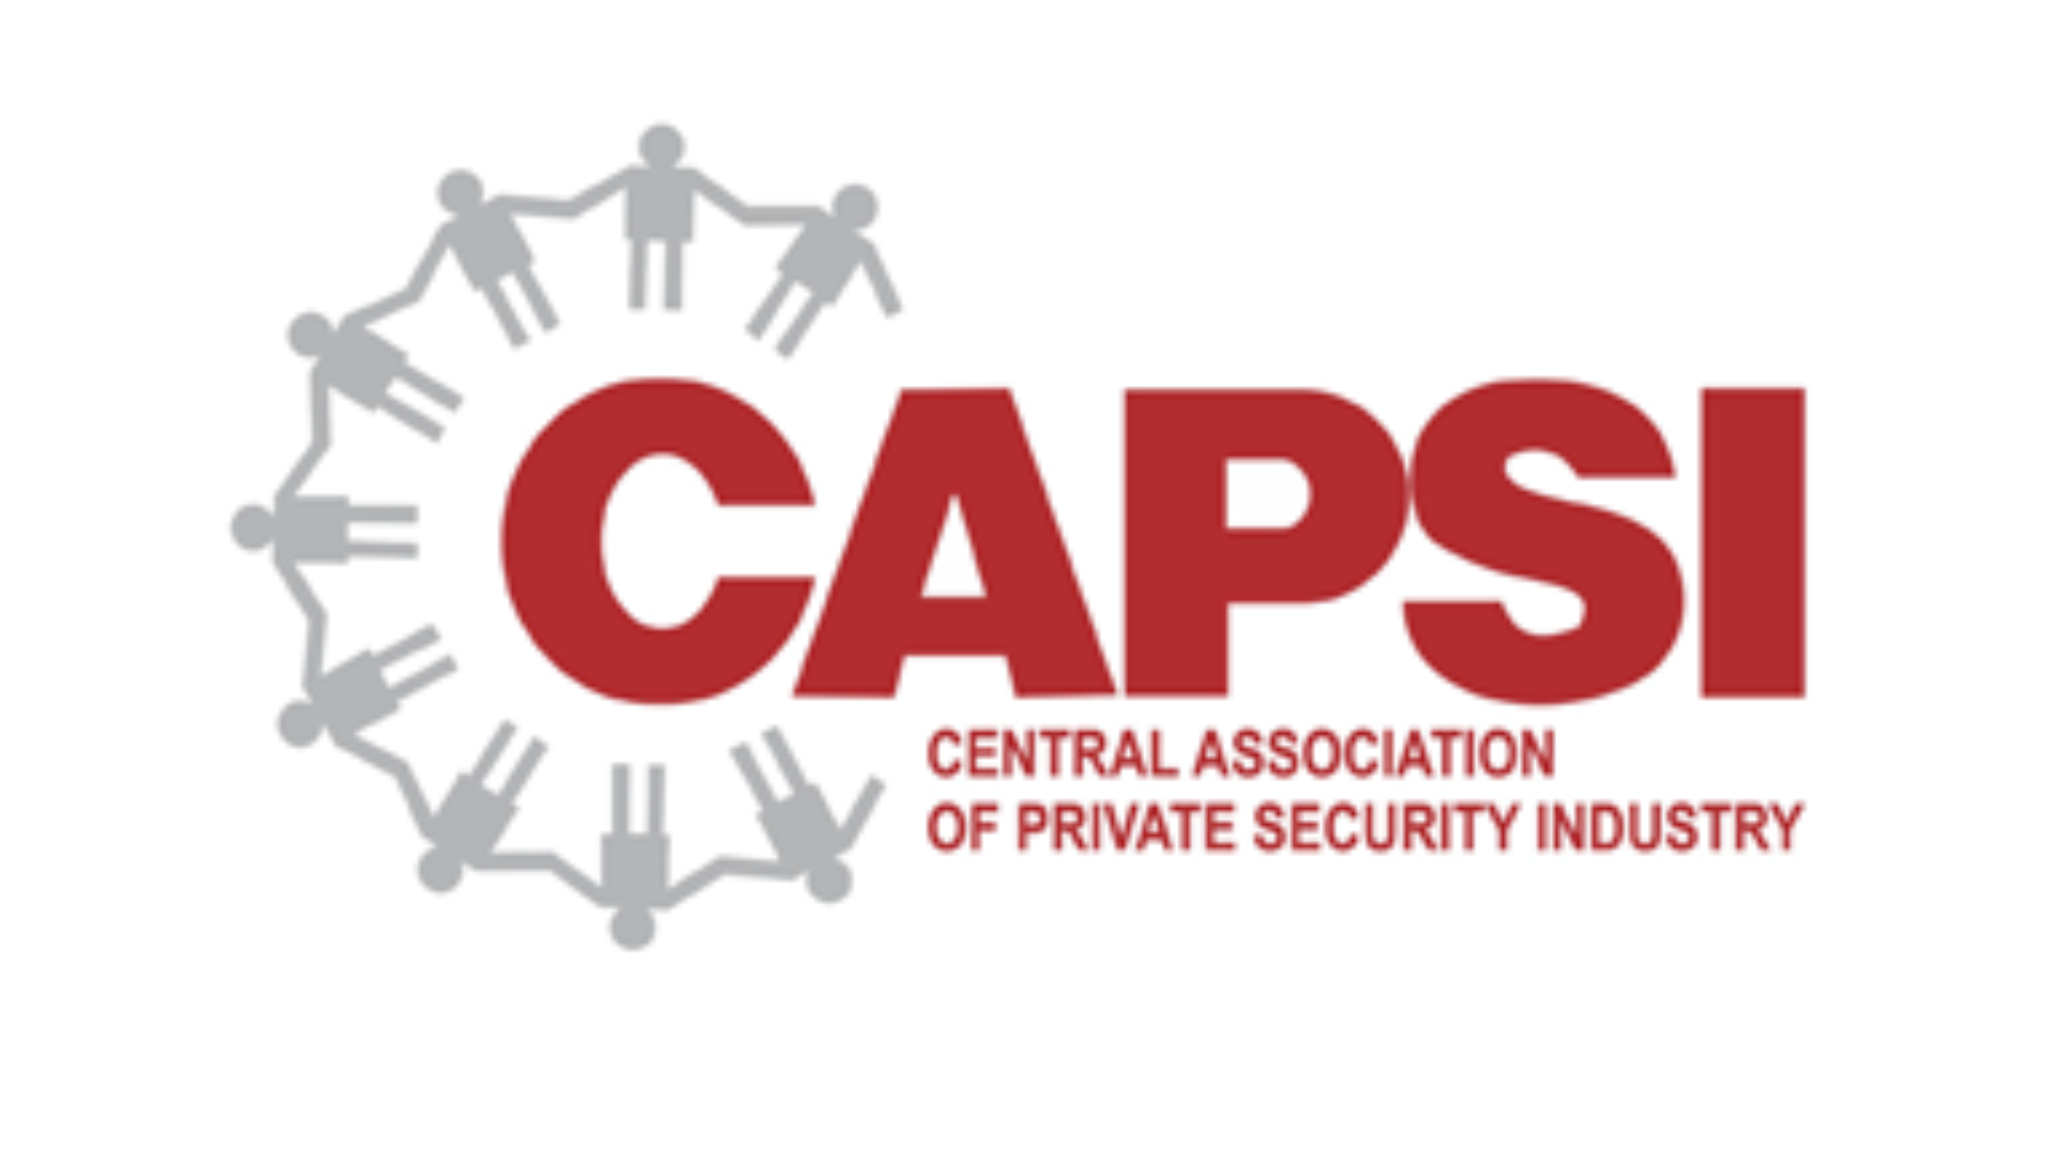 Follow Us On Twitter @CAPSI